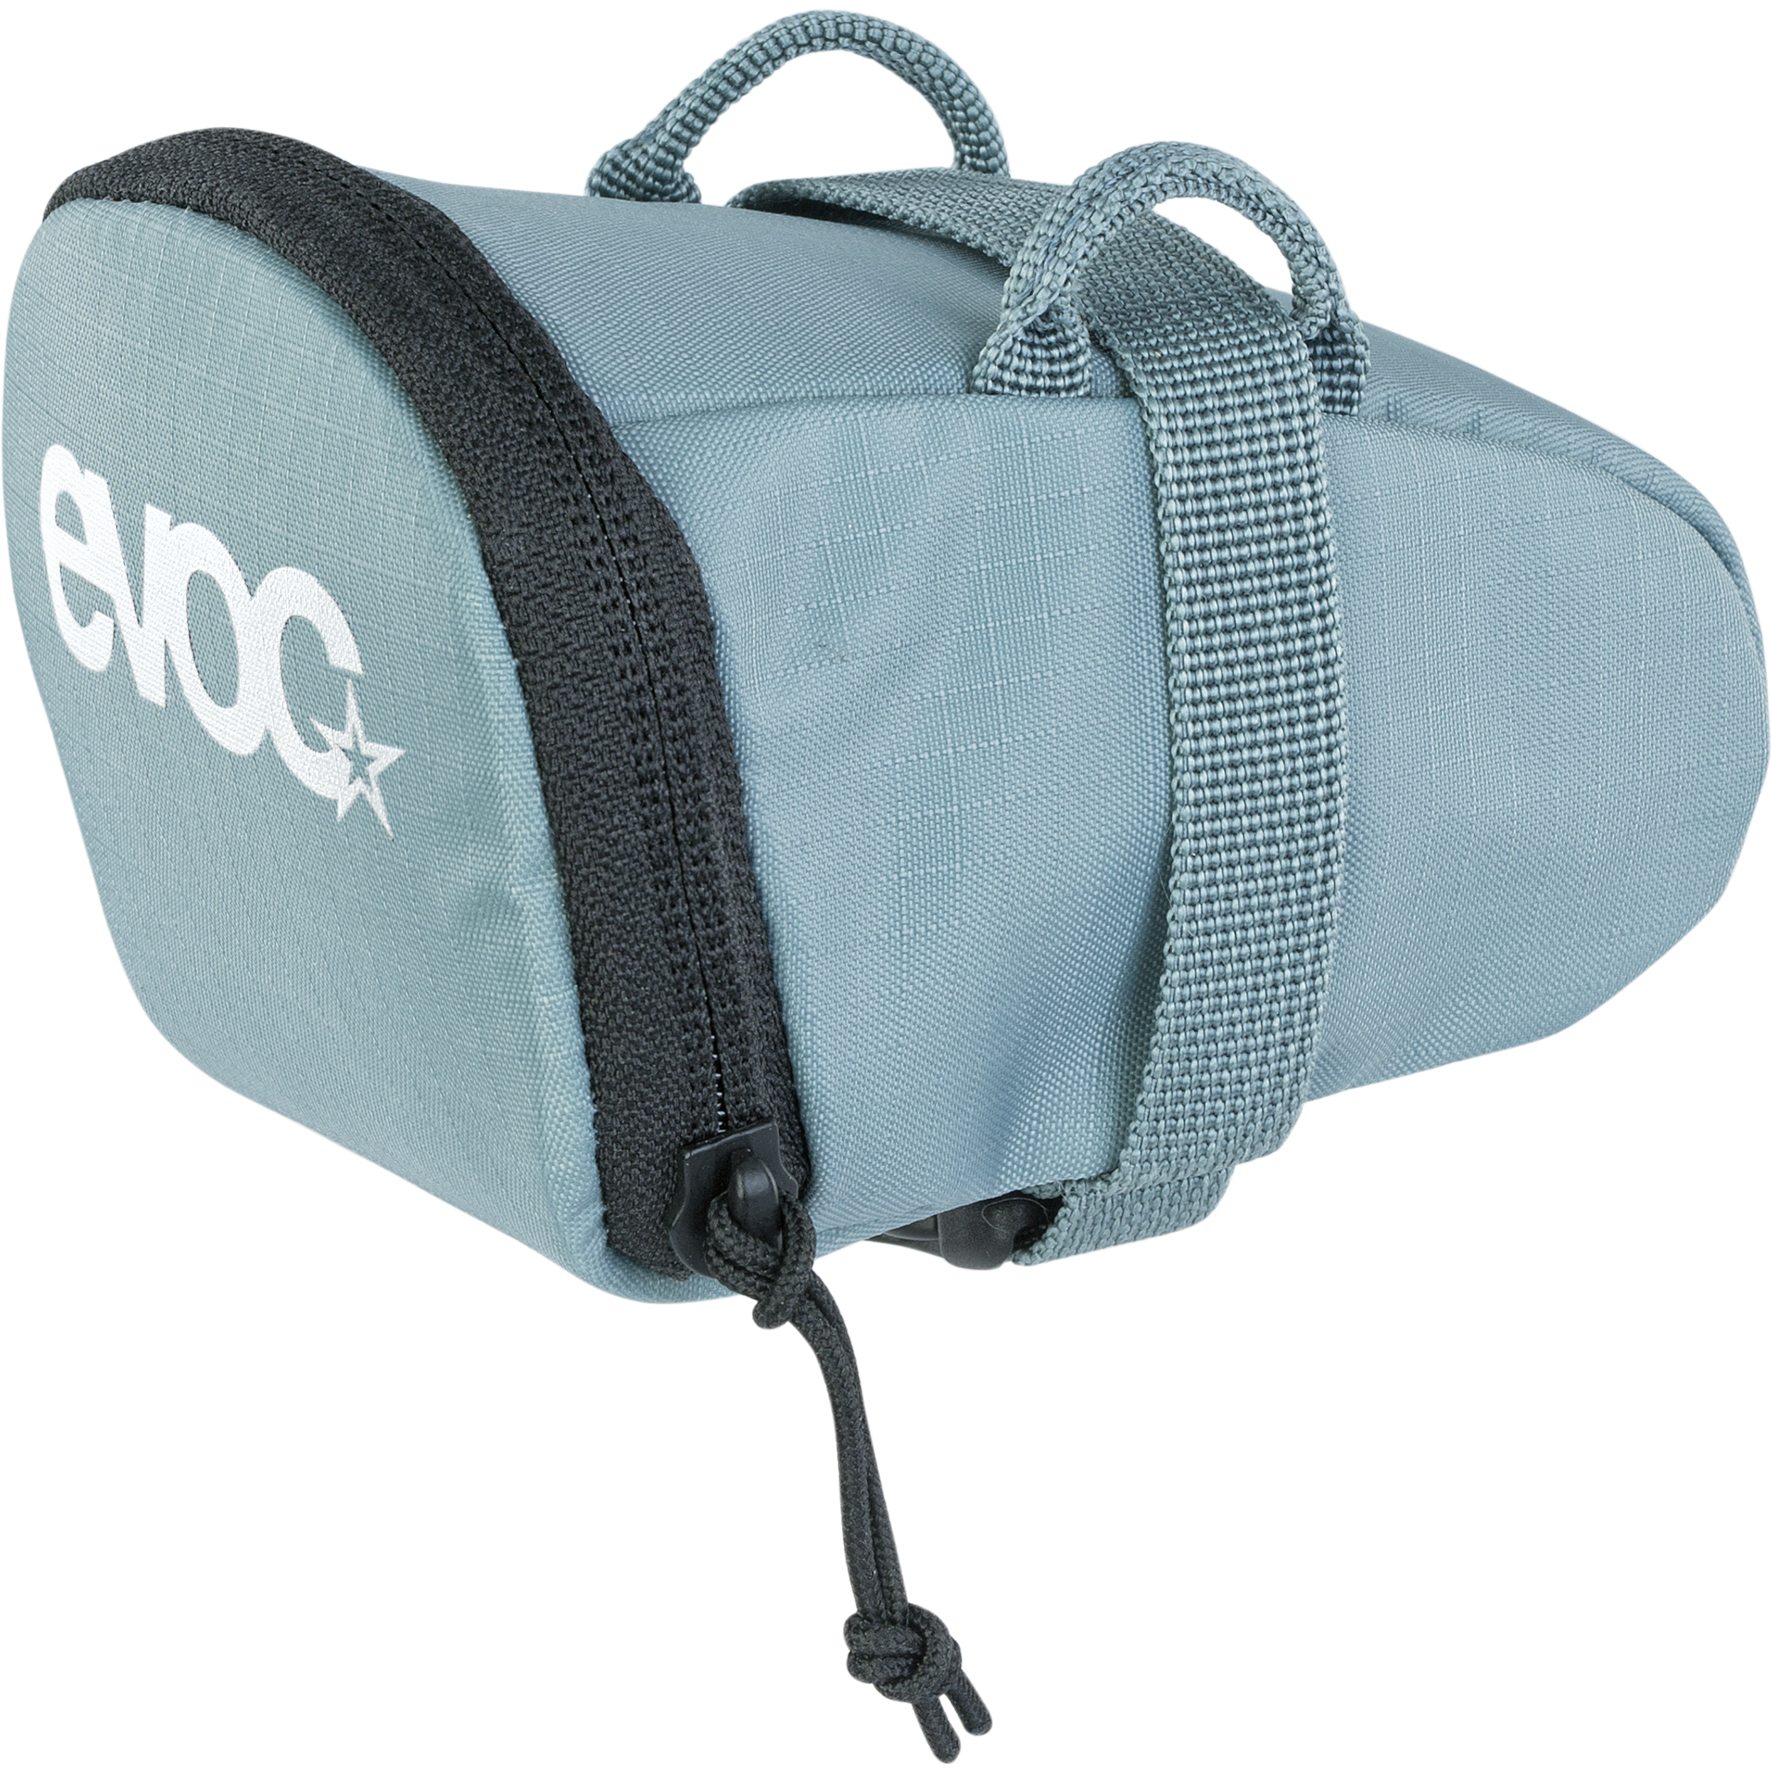 Produktbild von EVOC Seat Bag 0.3L Satteltasche - Steel